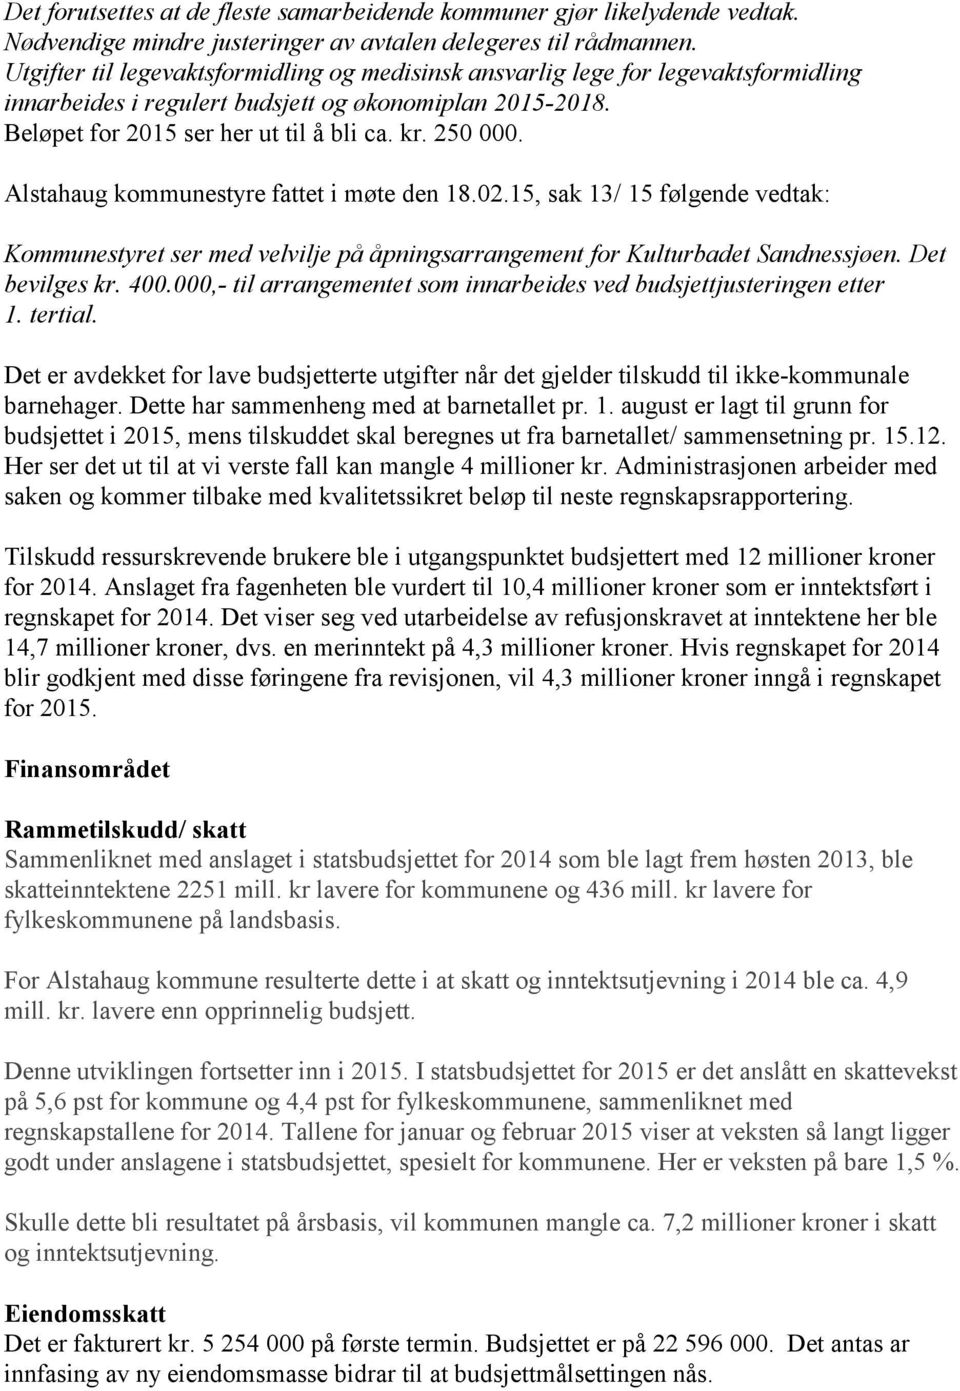 Alstahaug kommunestyre fattet i møte den 18.02.15, sak 13/ 15 følgende vedtak: Kommunestyret ser med velvilje på åpningsarrangement for Kulturbadet Sandnessjøen. Det bevilges kr. 400.